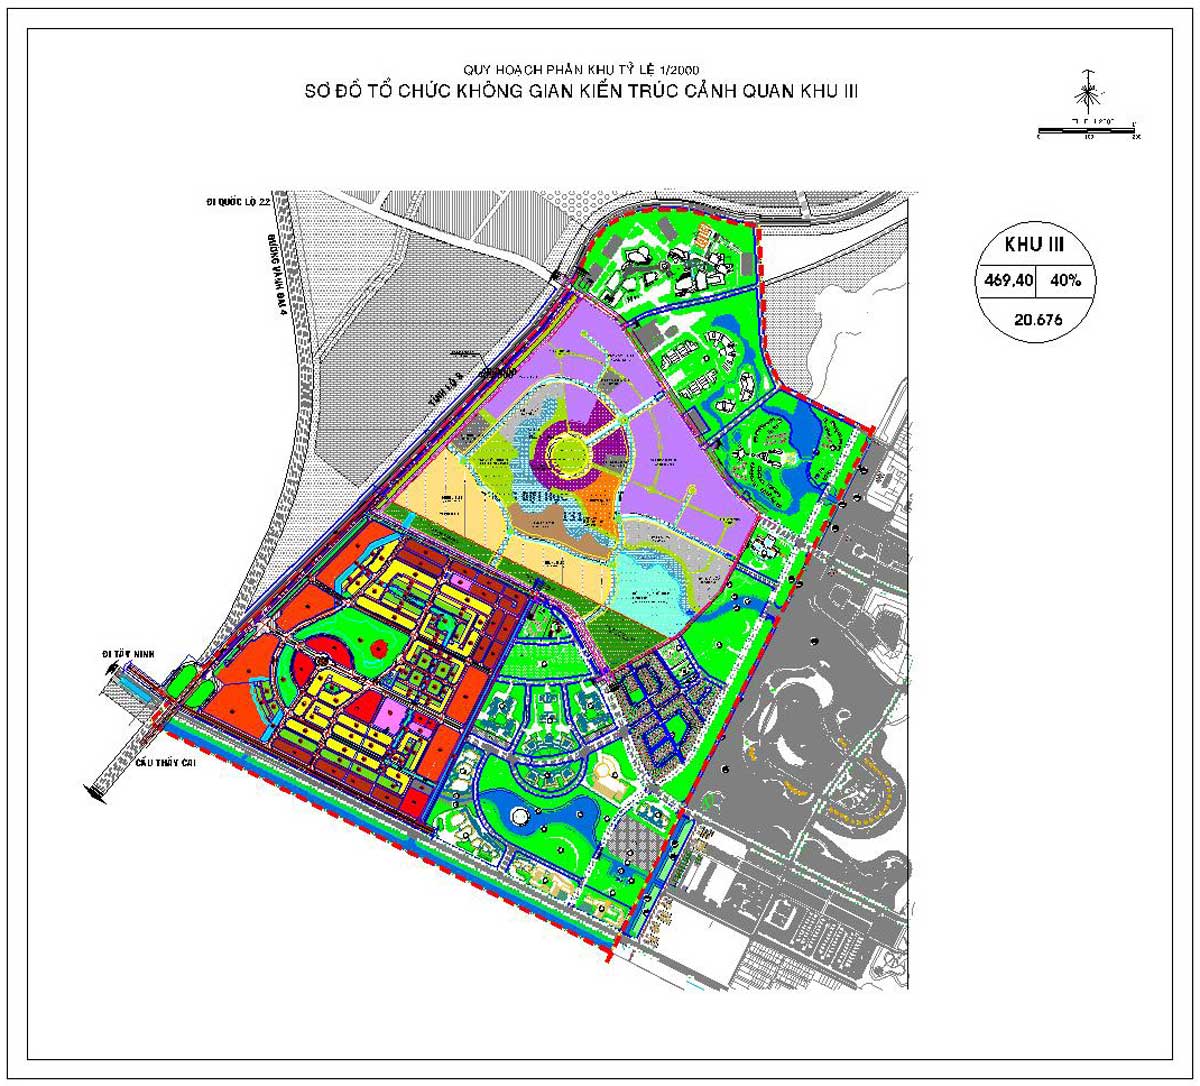 Quy hoạch phân khu tỉ lệ 1 2000 Vinhomes Hóc Môn Khu đô thị Tây Bắc Thành Phố Sơ đồ tổ chức không gian kiến trúc cảnh quan khu III